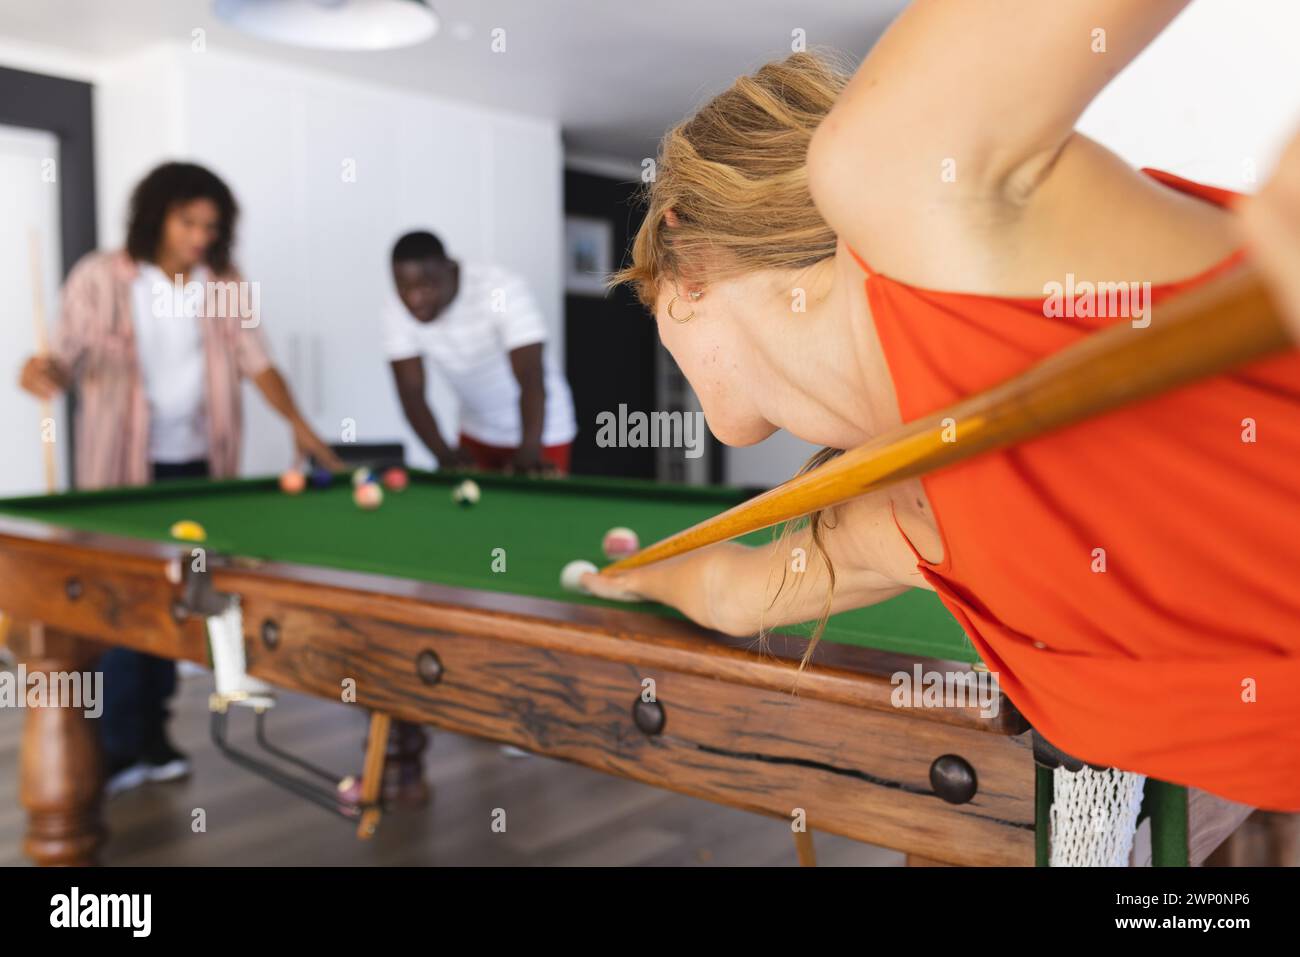 Junge kaukasische Frau spielt Billard und konzentriert sich auf ihren Schuss Stockfoto